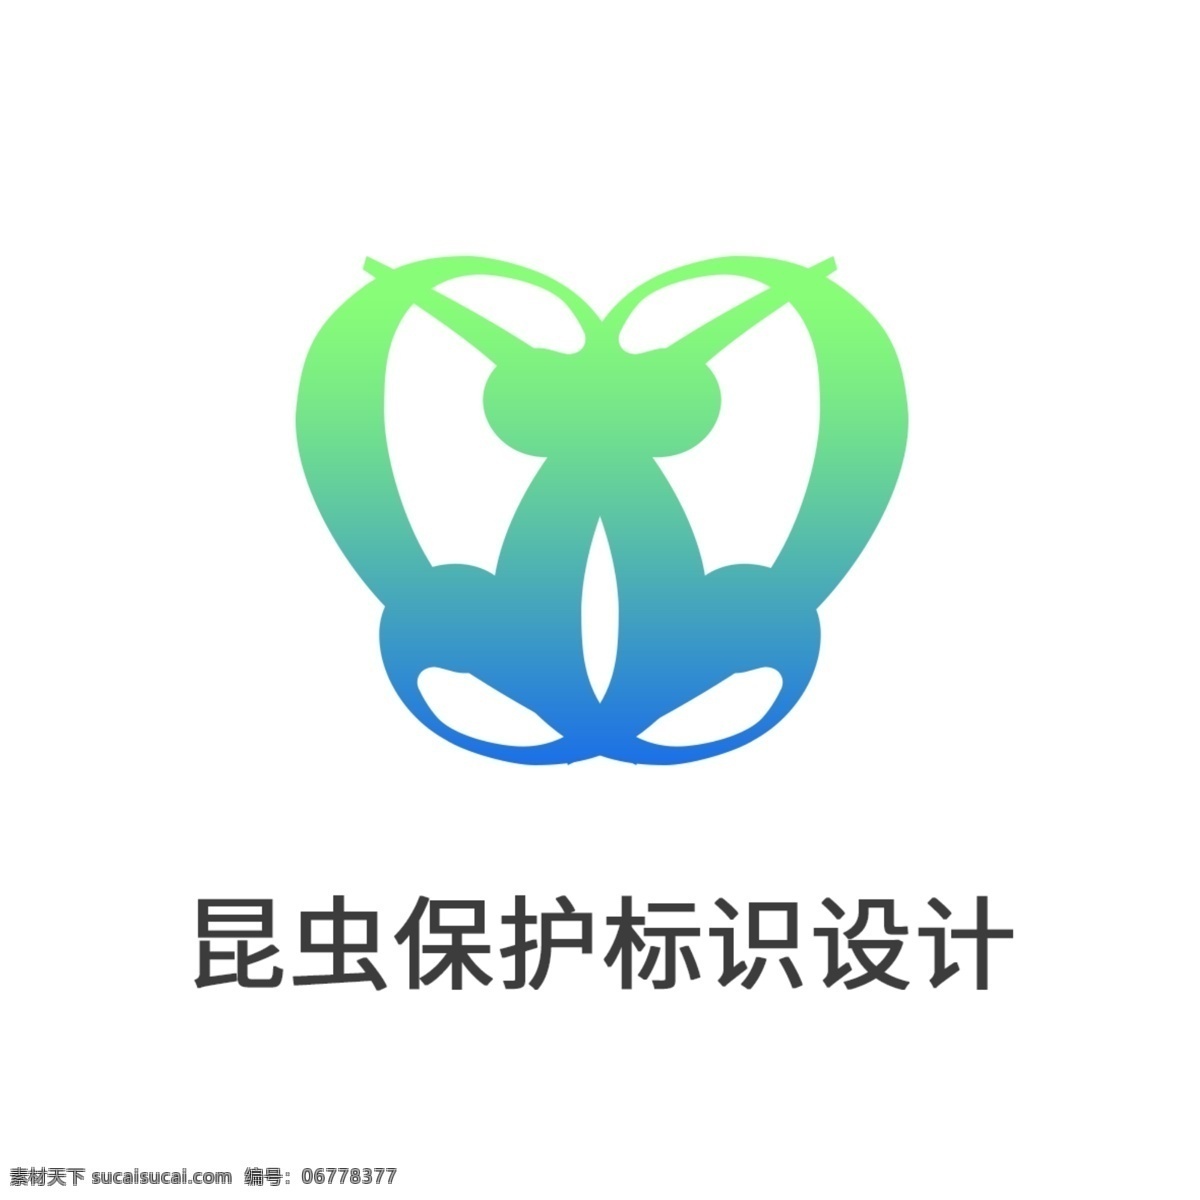 创意 vi 昆虫 保护 行业 标识 logo 元素 昆虫保护 标志 蓝绿色 设计元素